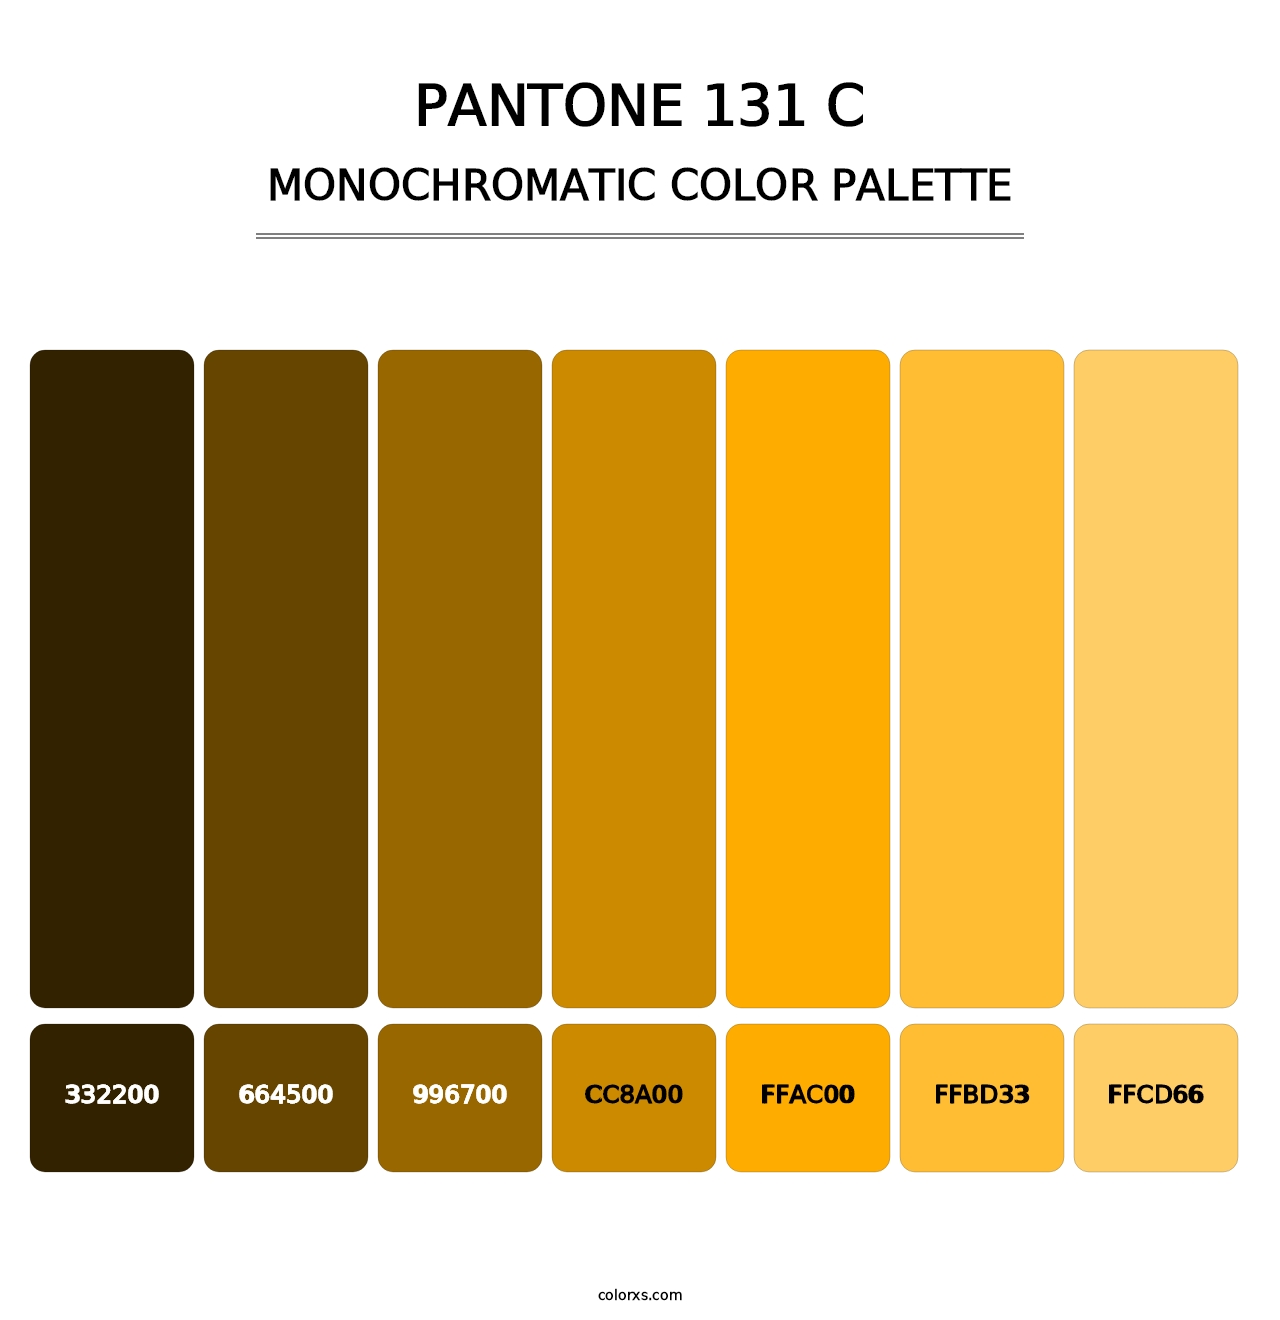 PANTONE 131 C - Monochromatic Color Palette